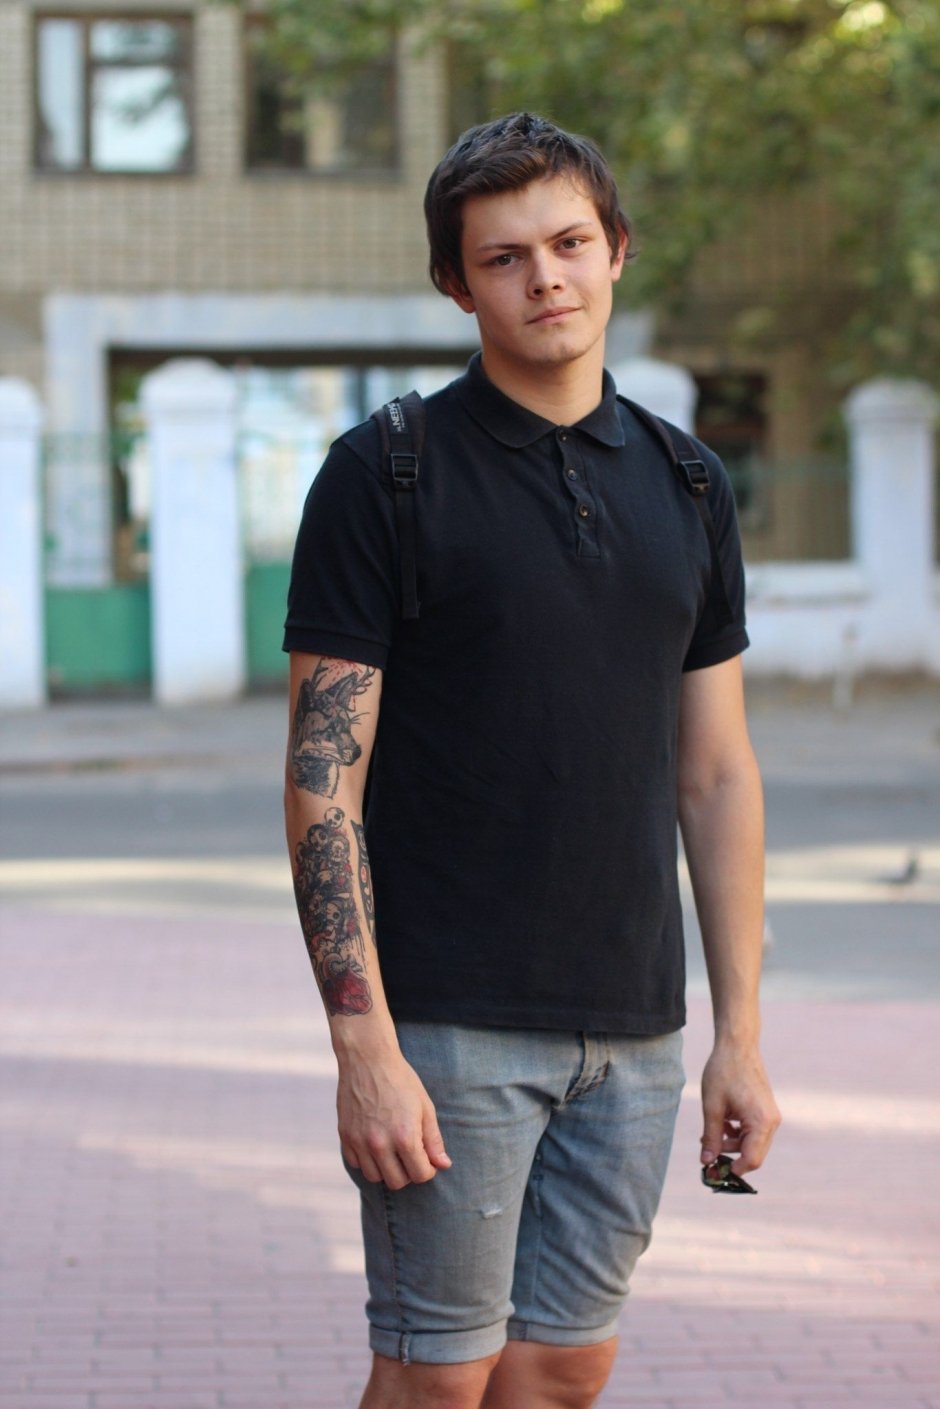 Никита, 20 лет, музыкант. Татуировки — это искусство, которое я хочу носить на себе. Каждое тату связано с каким-нибудь событием в моей жизни.